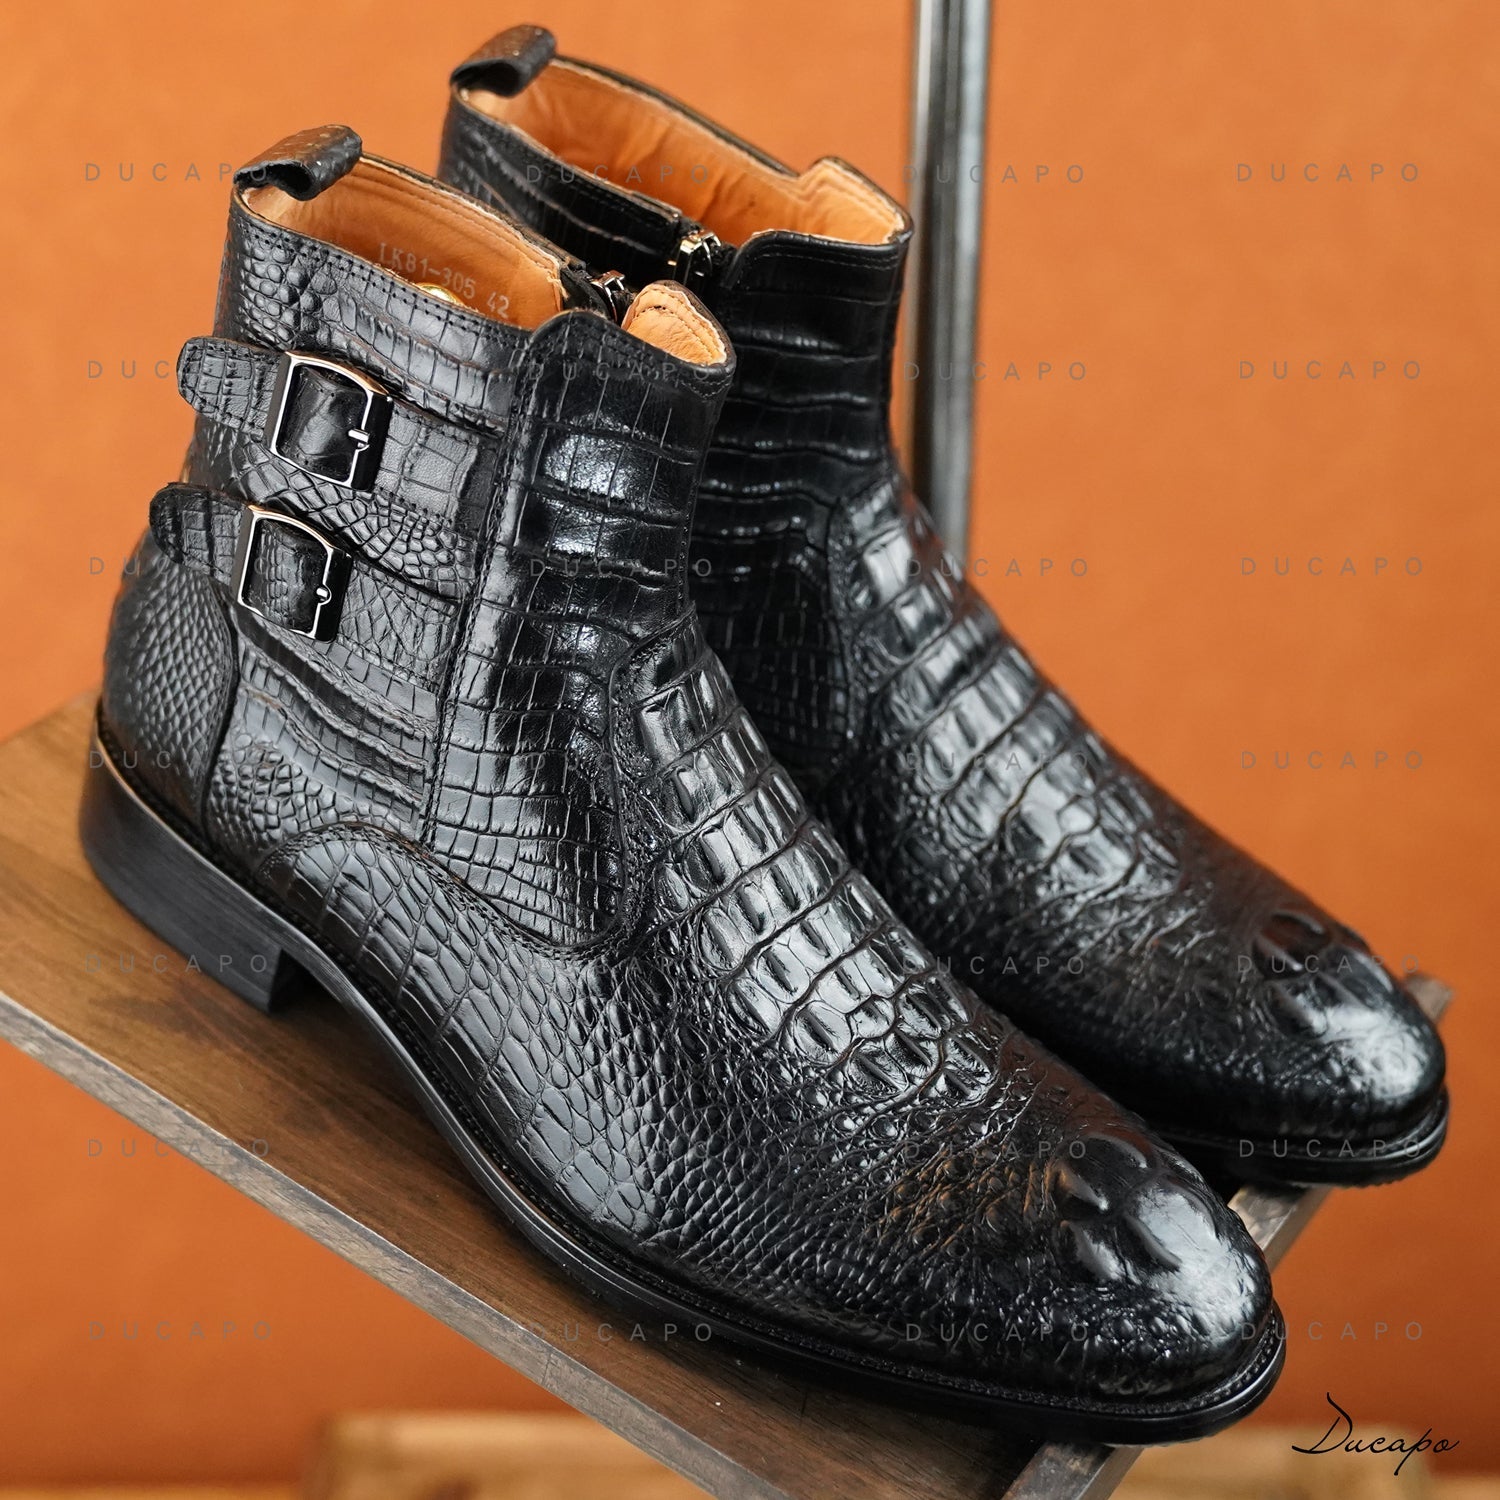 Ducapo-Stiefel mit Schnallenstruktur